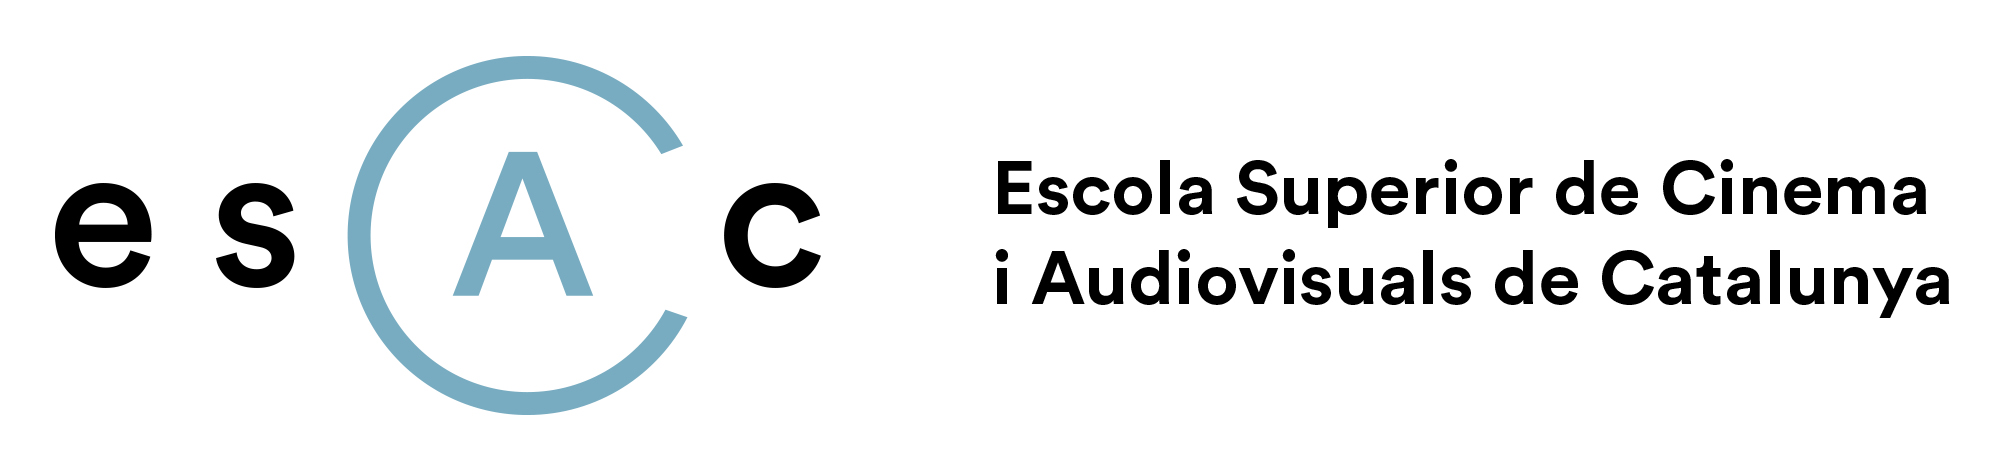 Logo ESCAC